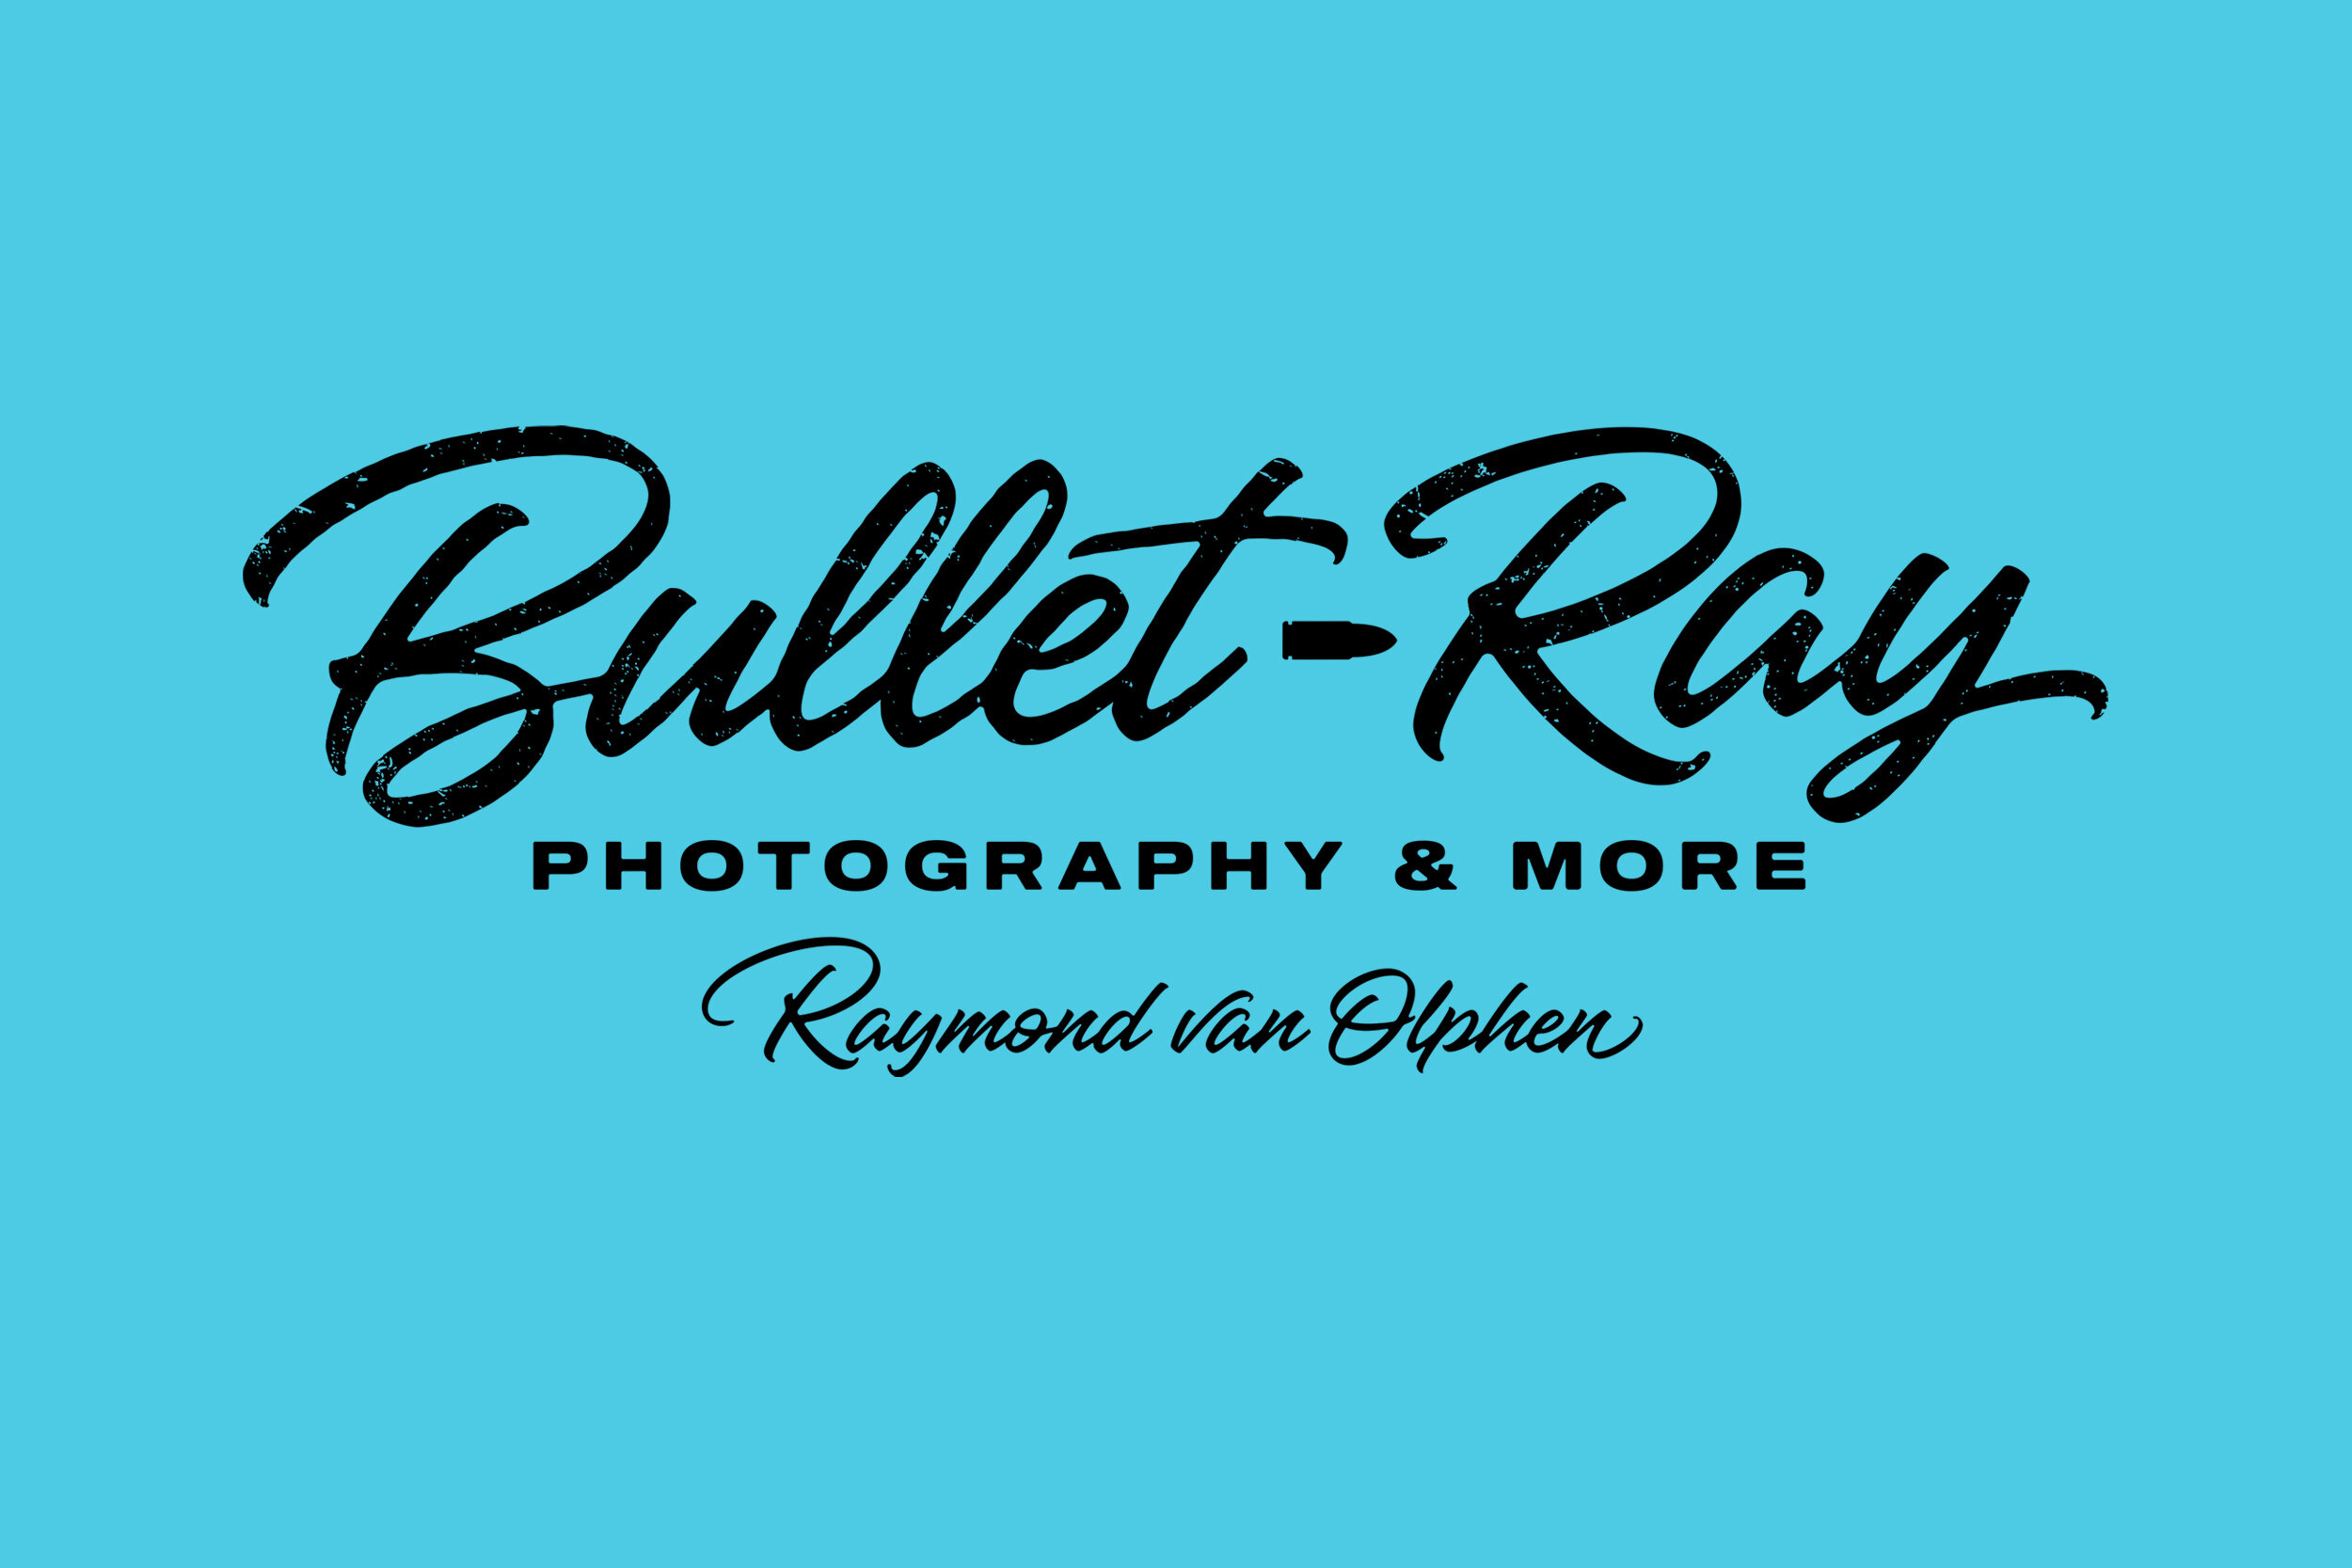 Logo_BulletRay_Shortlife.jpg